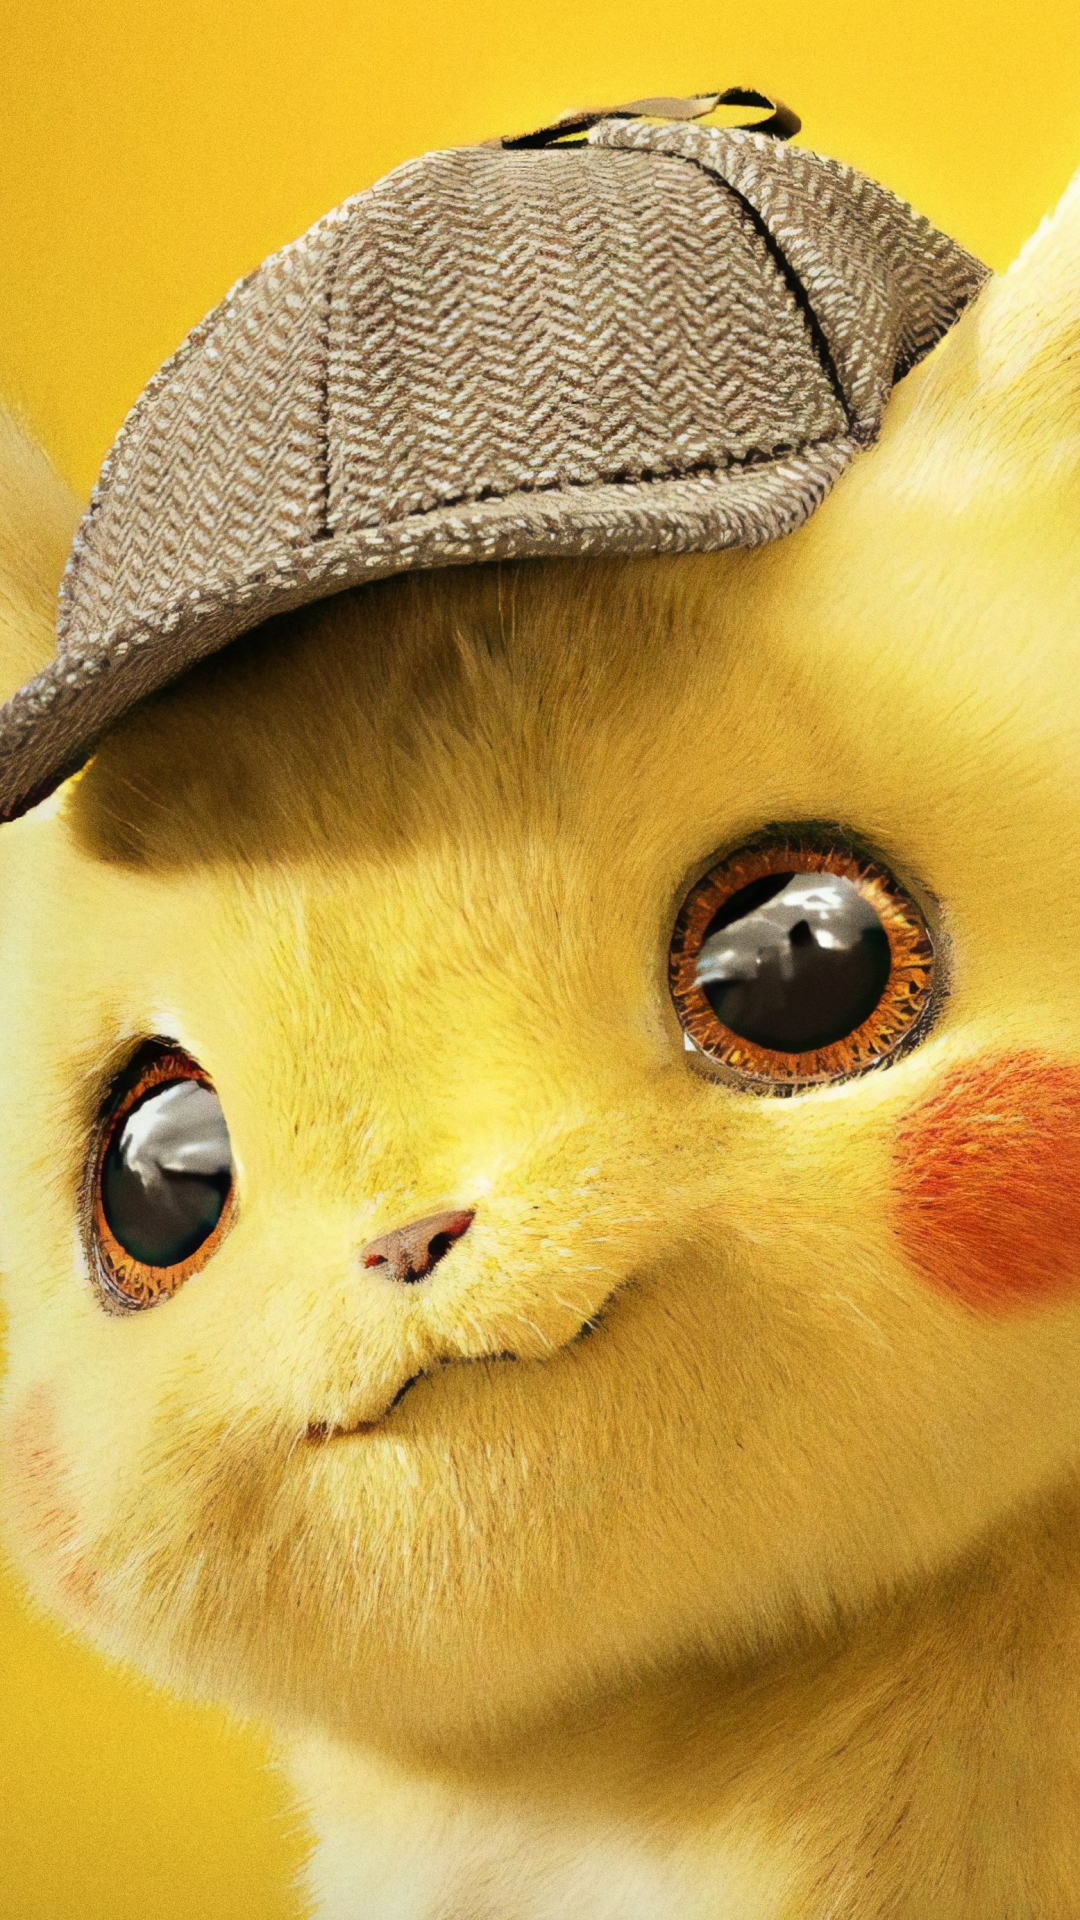 Baixe o papel de parede Pokémon Detetive Pikachu para o seu celular em  imagens verticais de alta qualidade Pokémon Detetive Pikachu gratuitamente